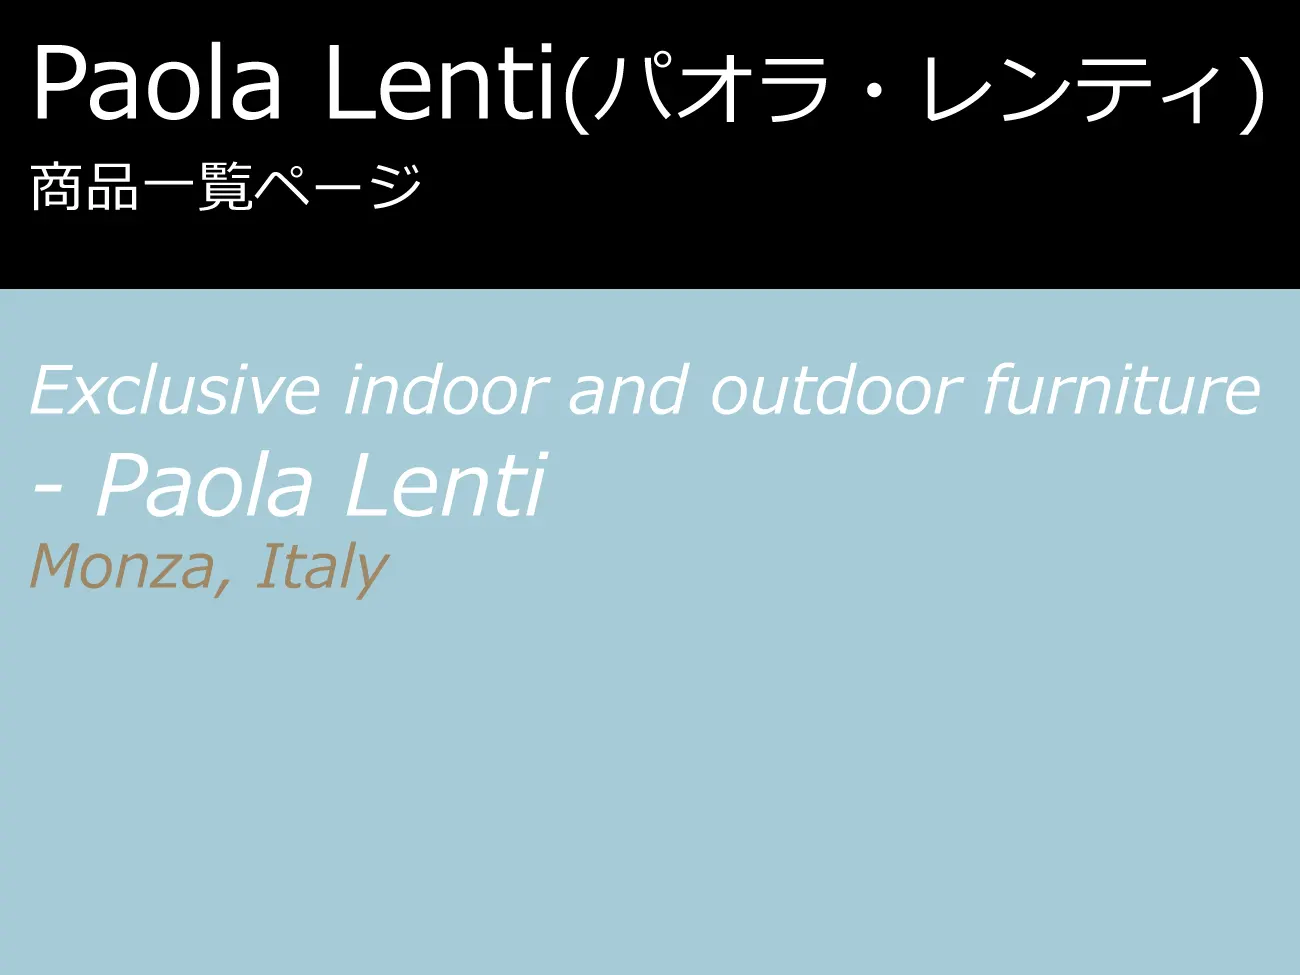 Paola Lenti (パオラ・レンティ) 商品一覧 | イタリア家具を直輸入する 